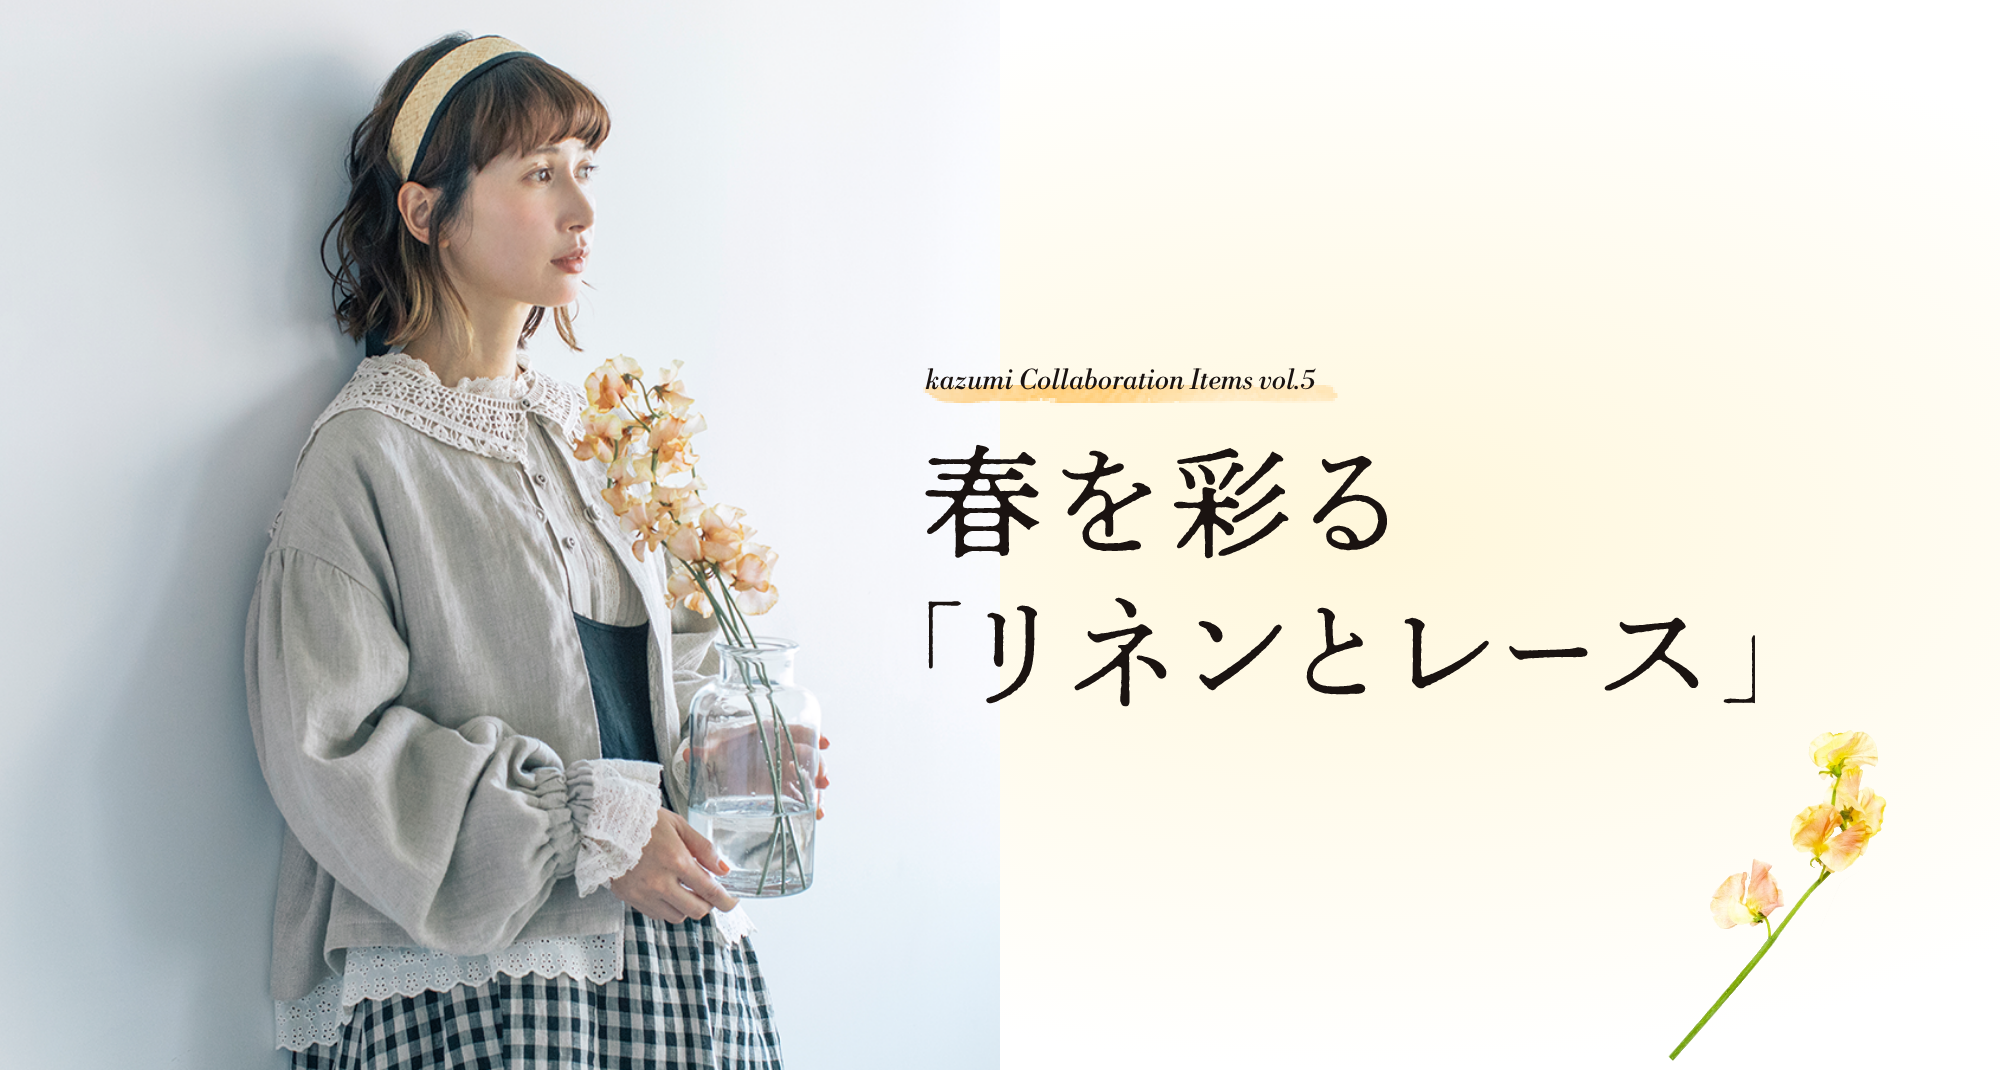 kazumi Collaboration Items vol.5 春を彩る「リネンとレース」